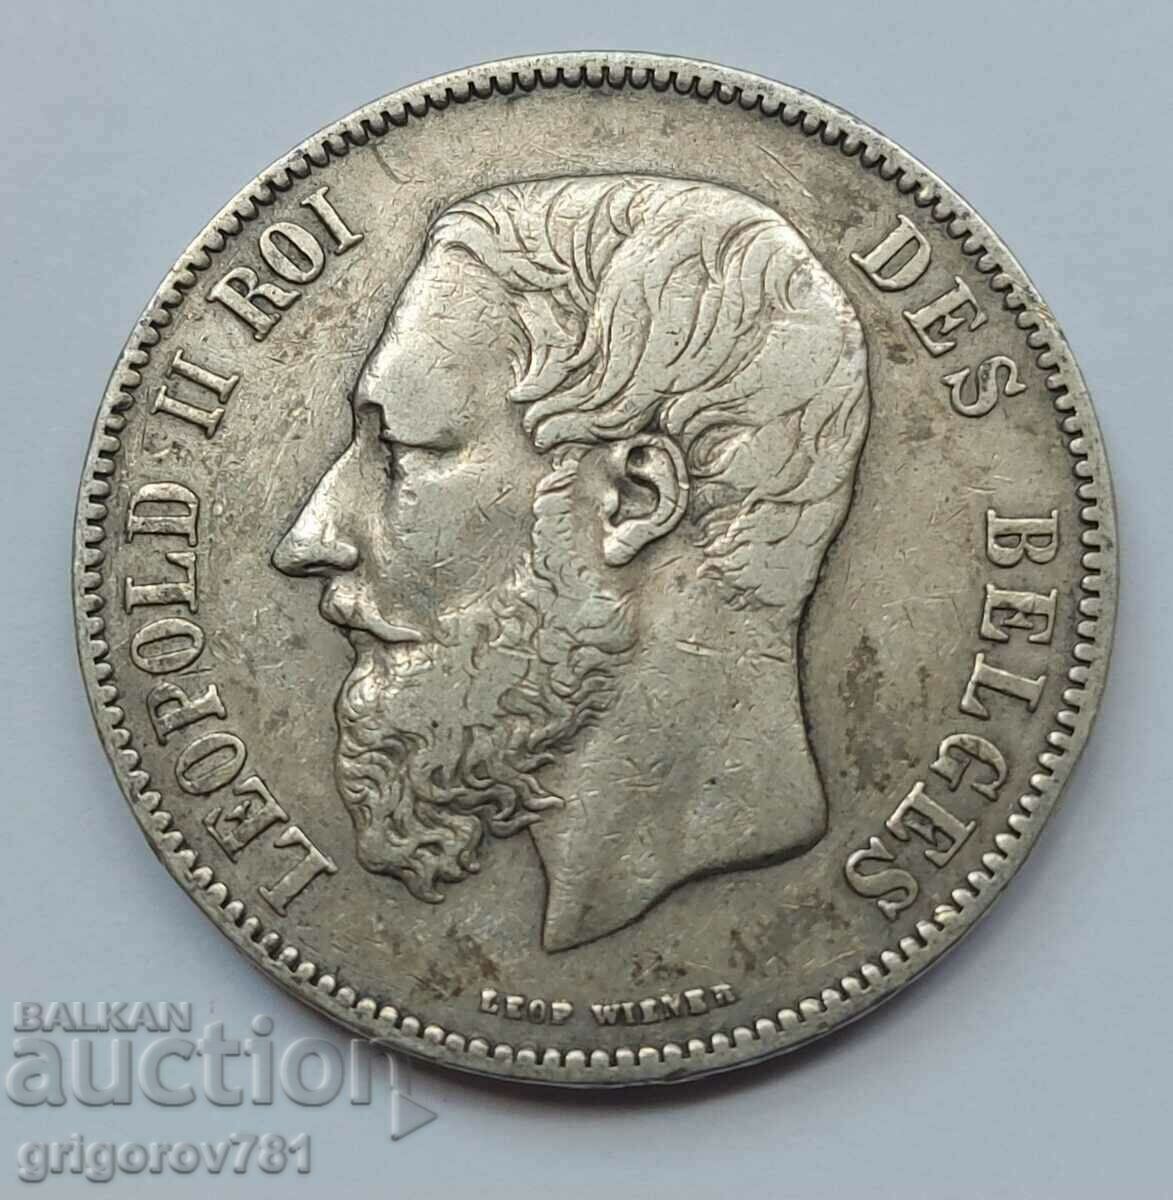 5 Francs Silver Belgium 1870 - Silver Coin #236